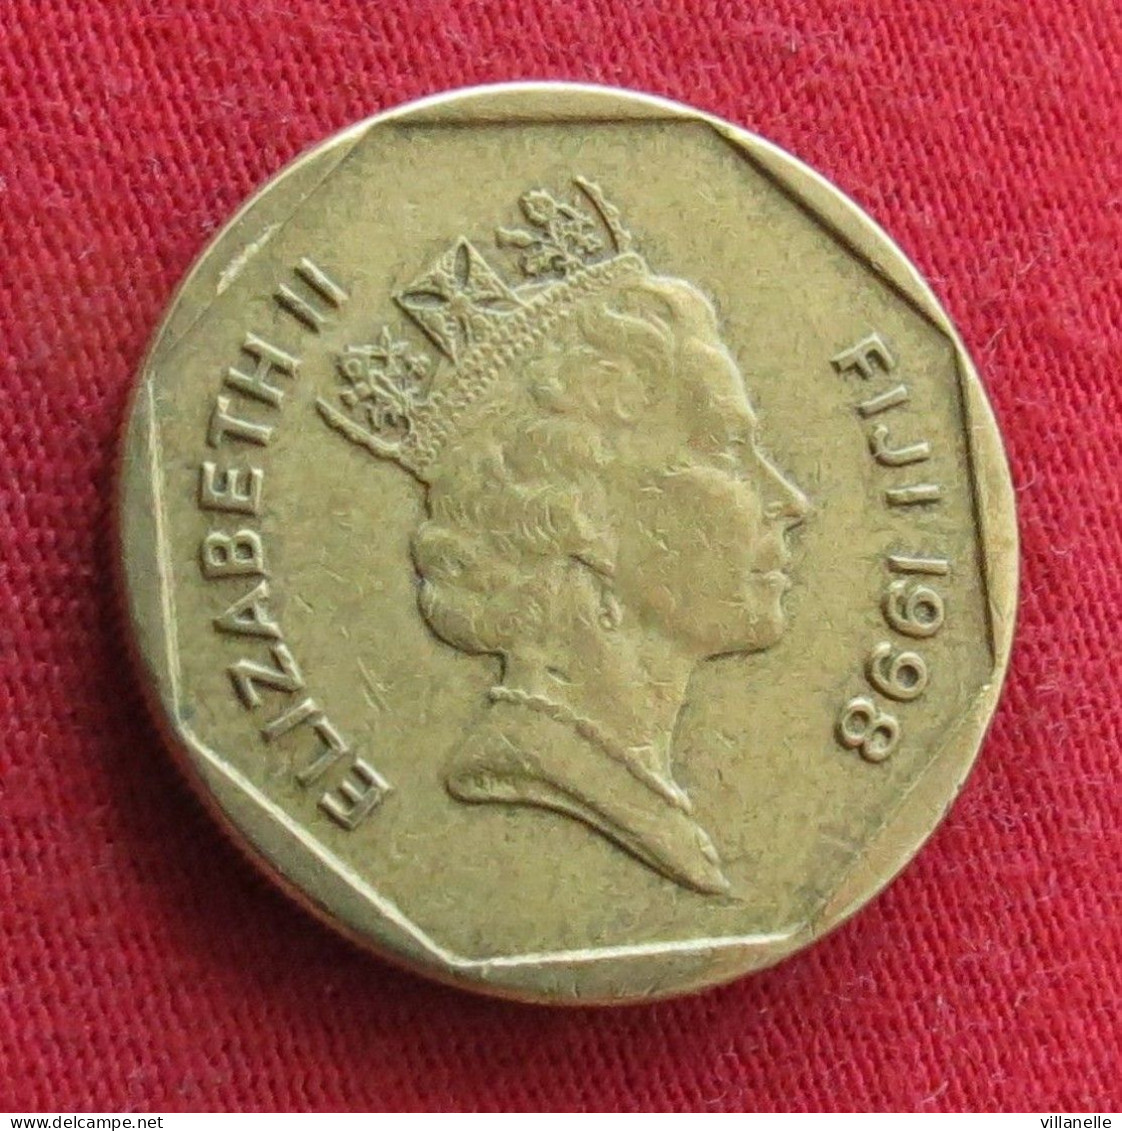 Fiji 1 One Dollar 1998 KM# 73 *V2T - Figi